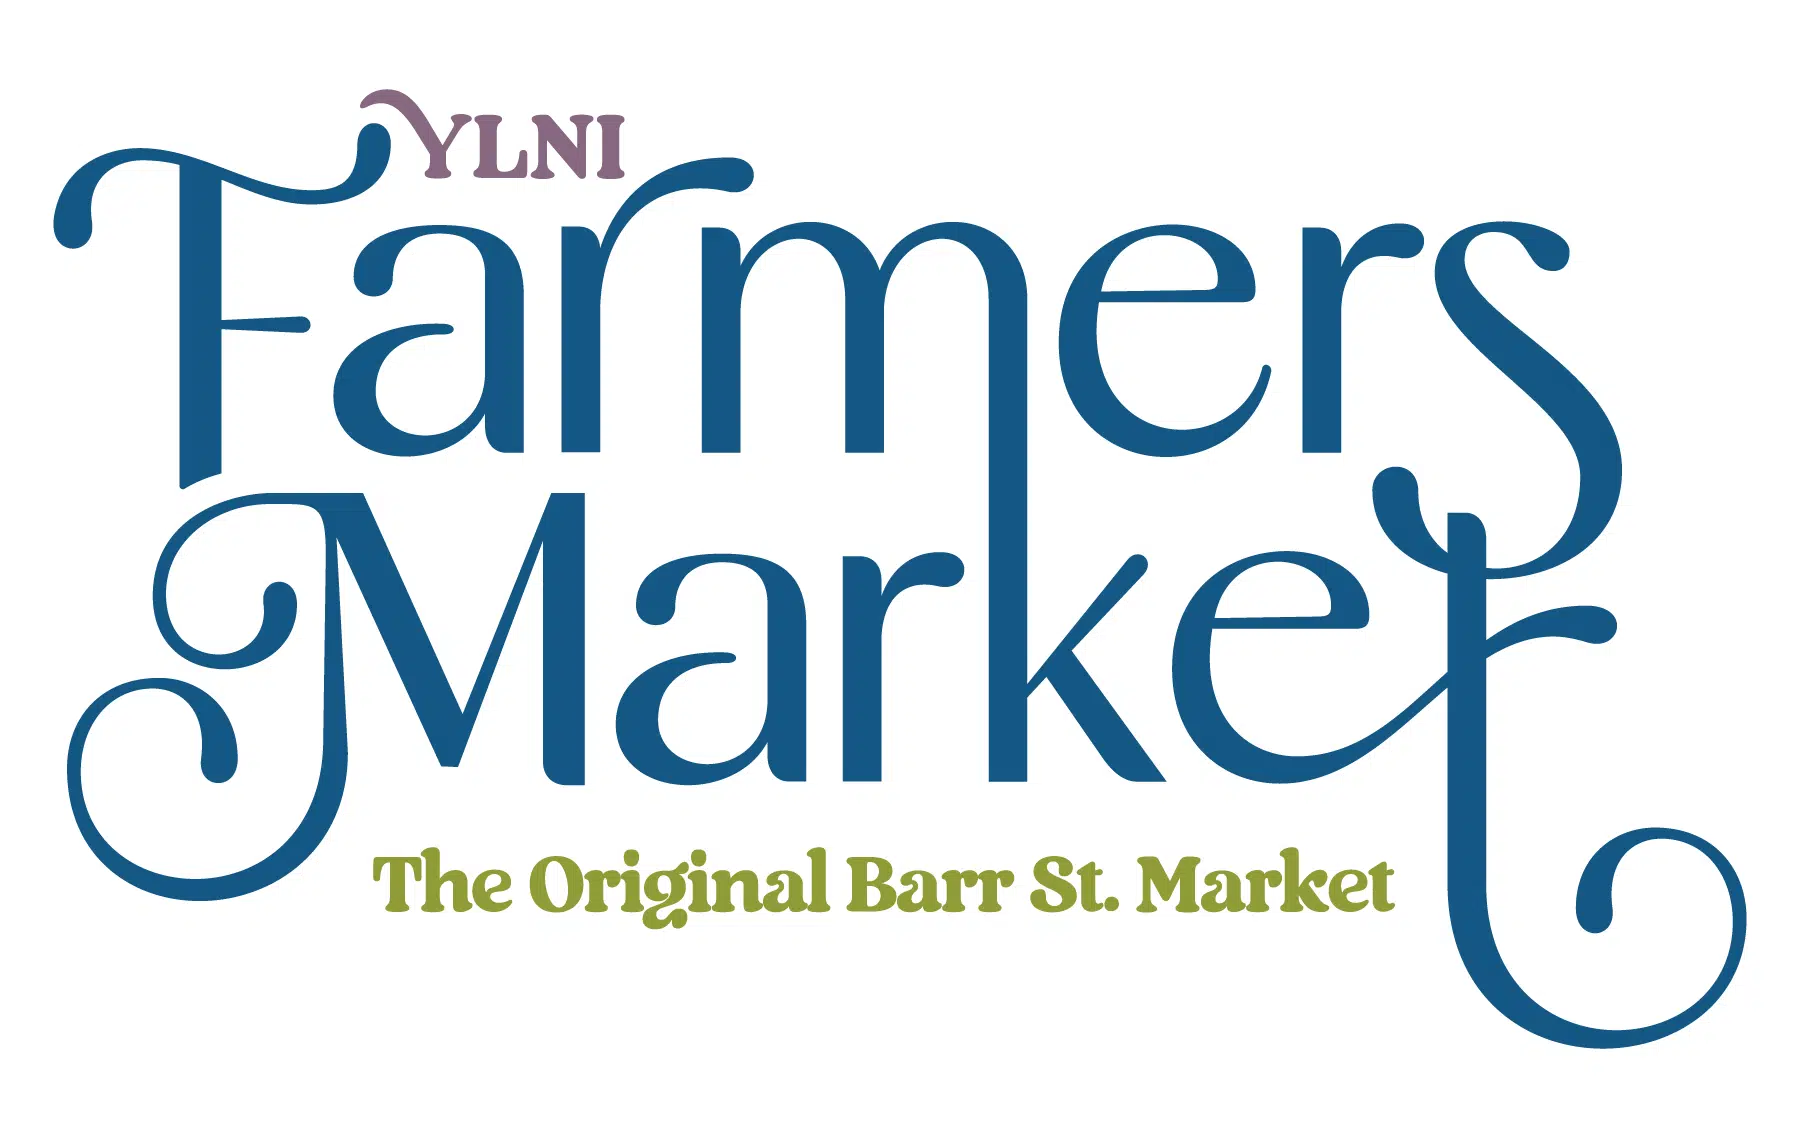 Ashley Wagner YLNI Farmers Market